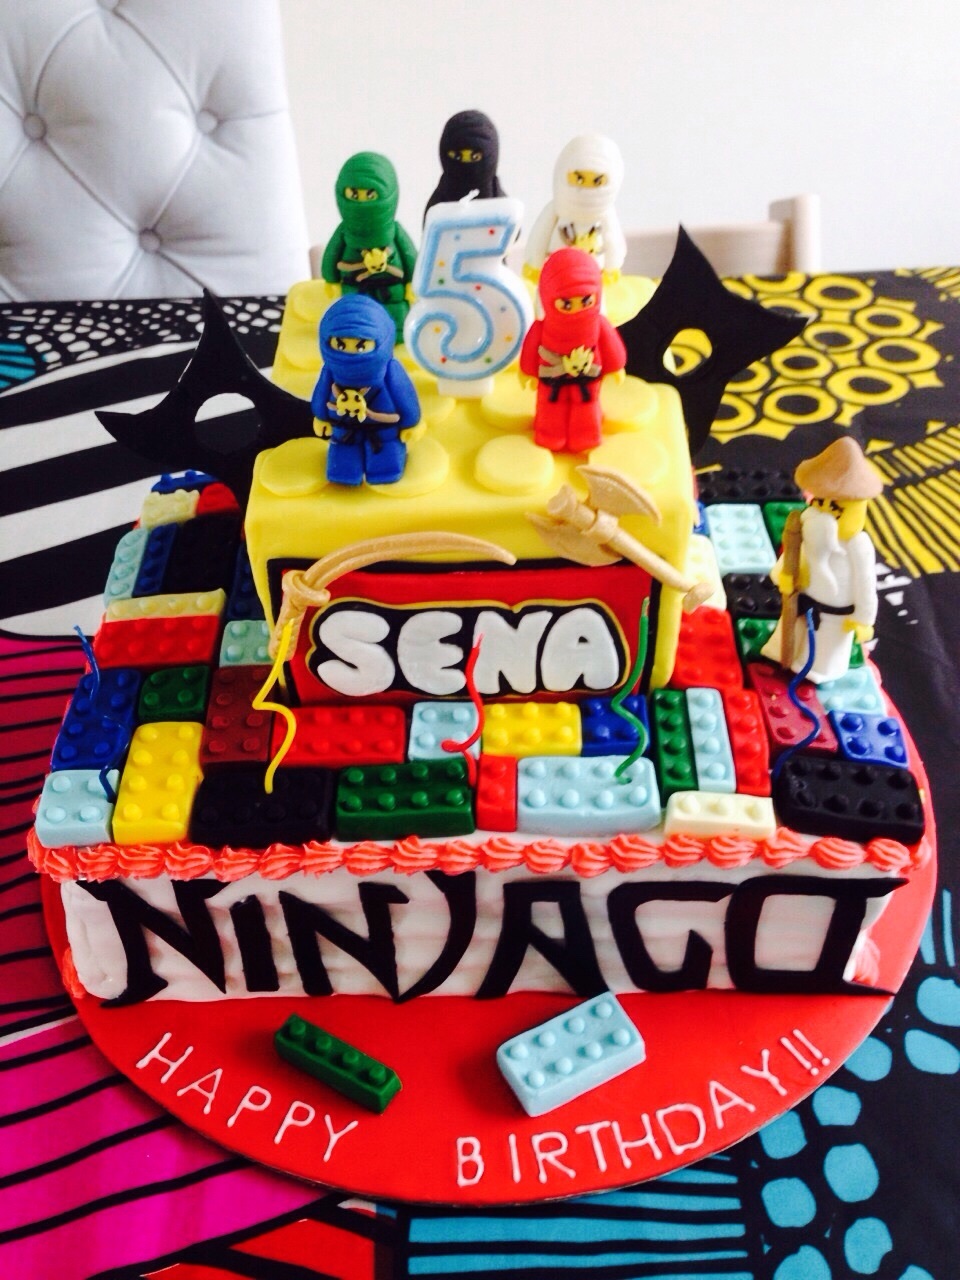 Lego Ninjago Cake Le Sucre 香港 アイシングクッキーとデコレーションケーキのサロン